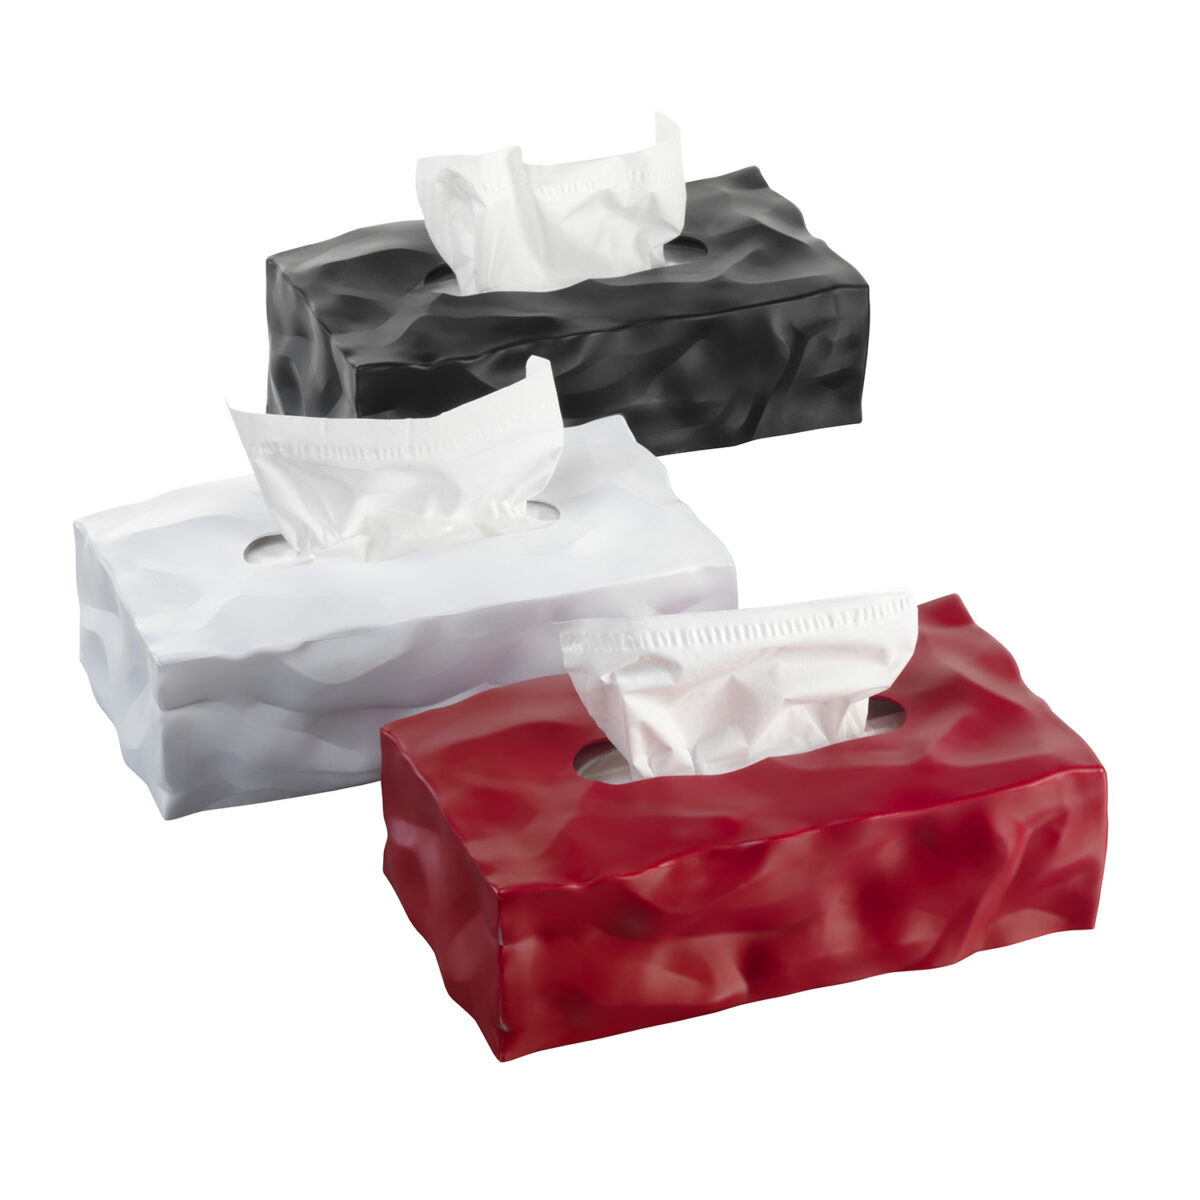 Cubo porta fazzoletti - Cube tissue box